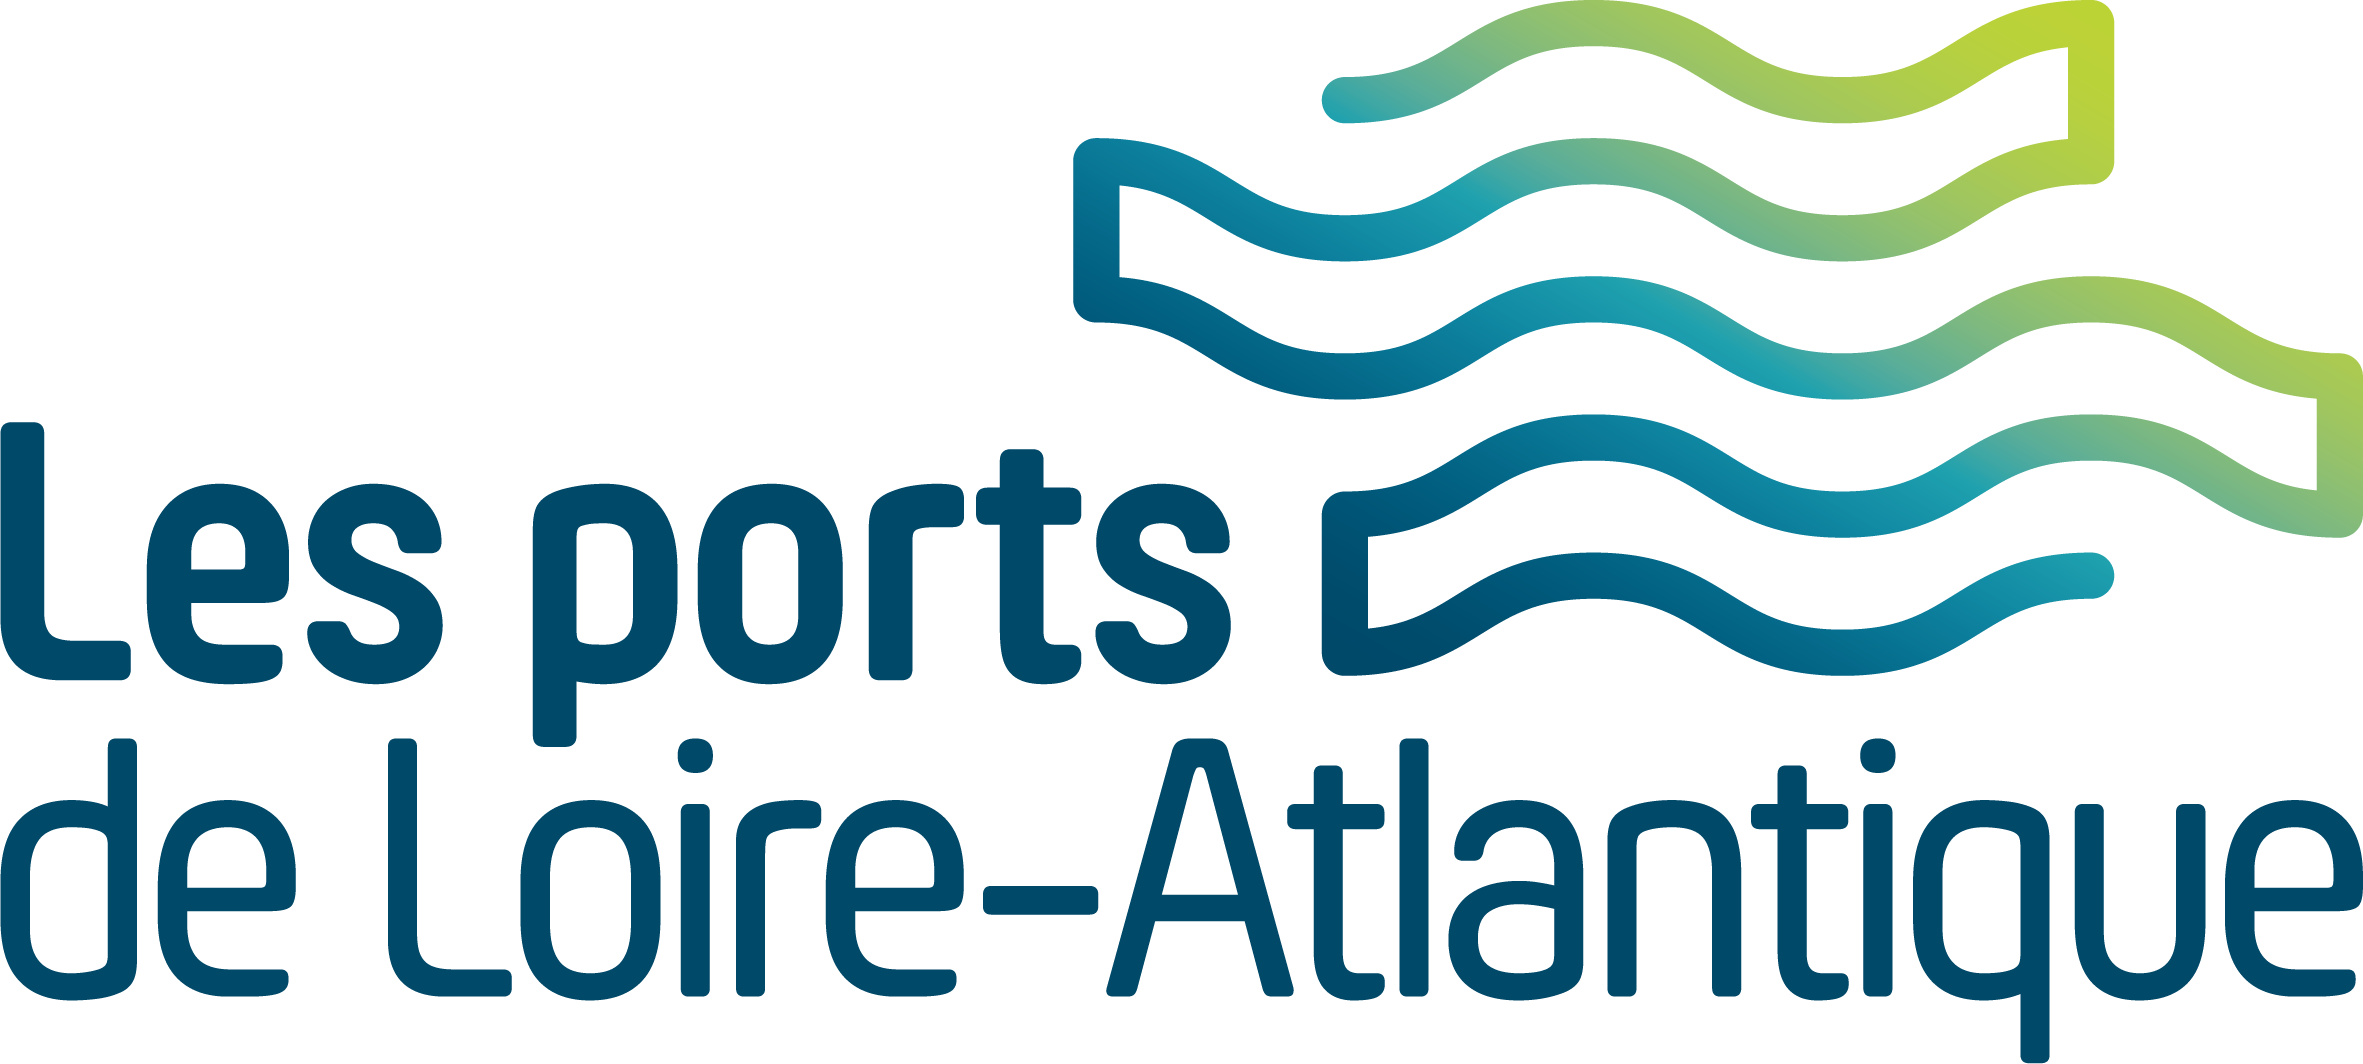 Les ports de loire atlantique logo